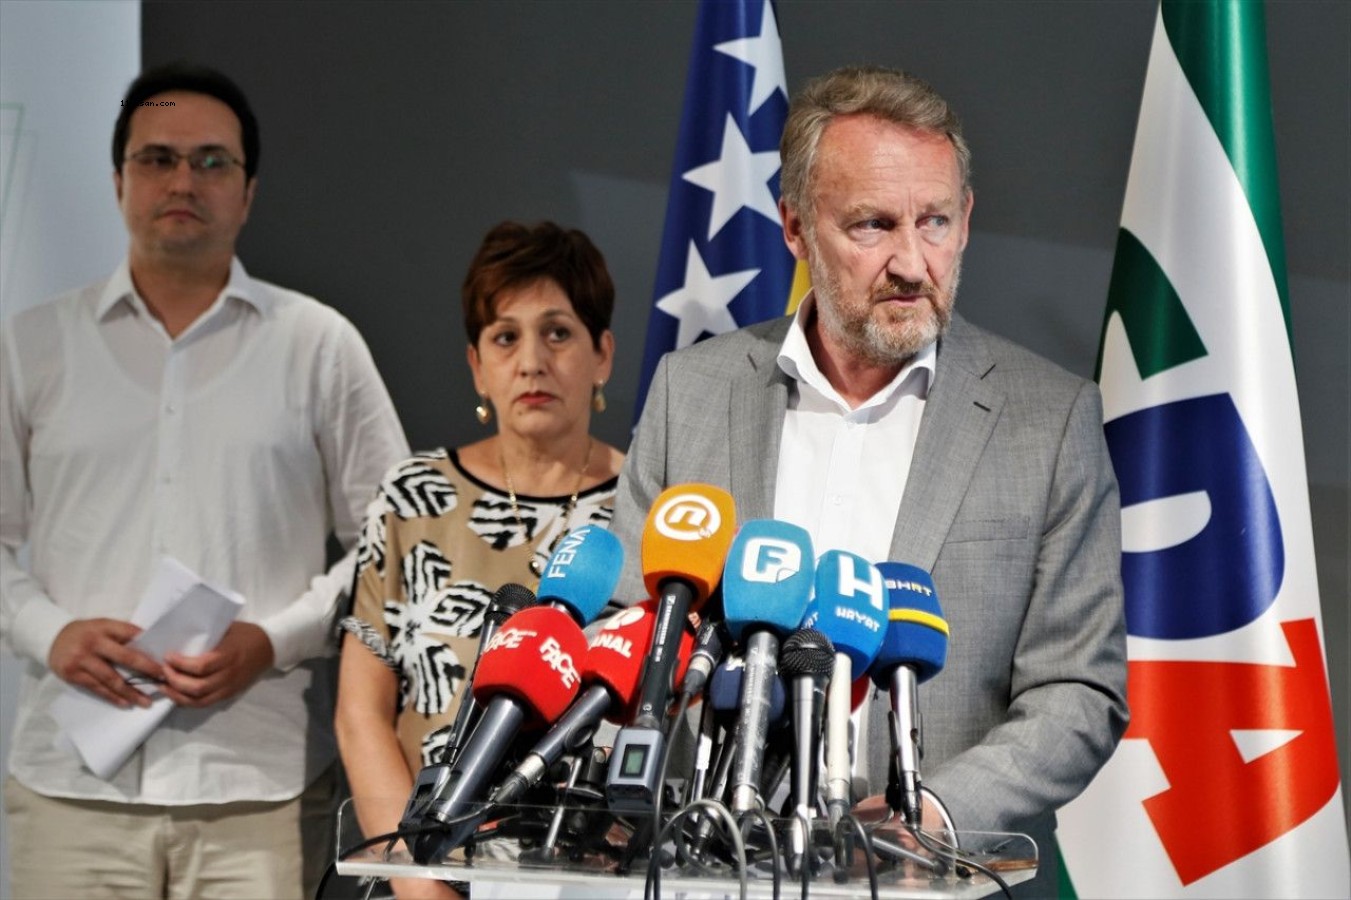 Bosna Hersek'te seçim yasasında değişiklik dayatılacağı iddiasına Boşnaklar tepkili;